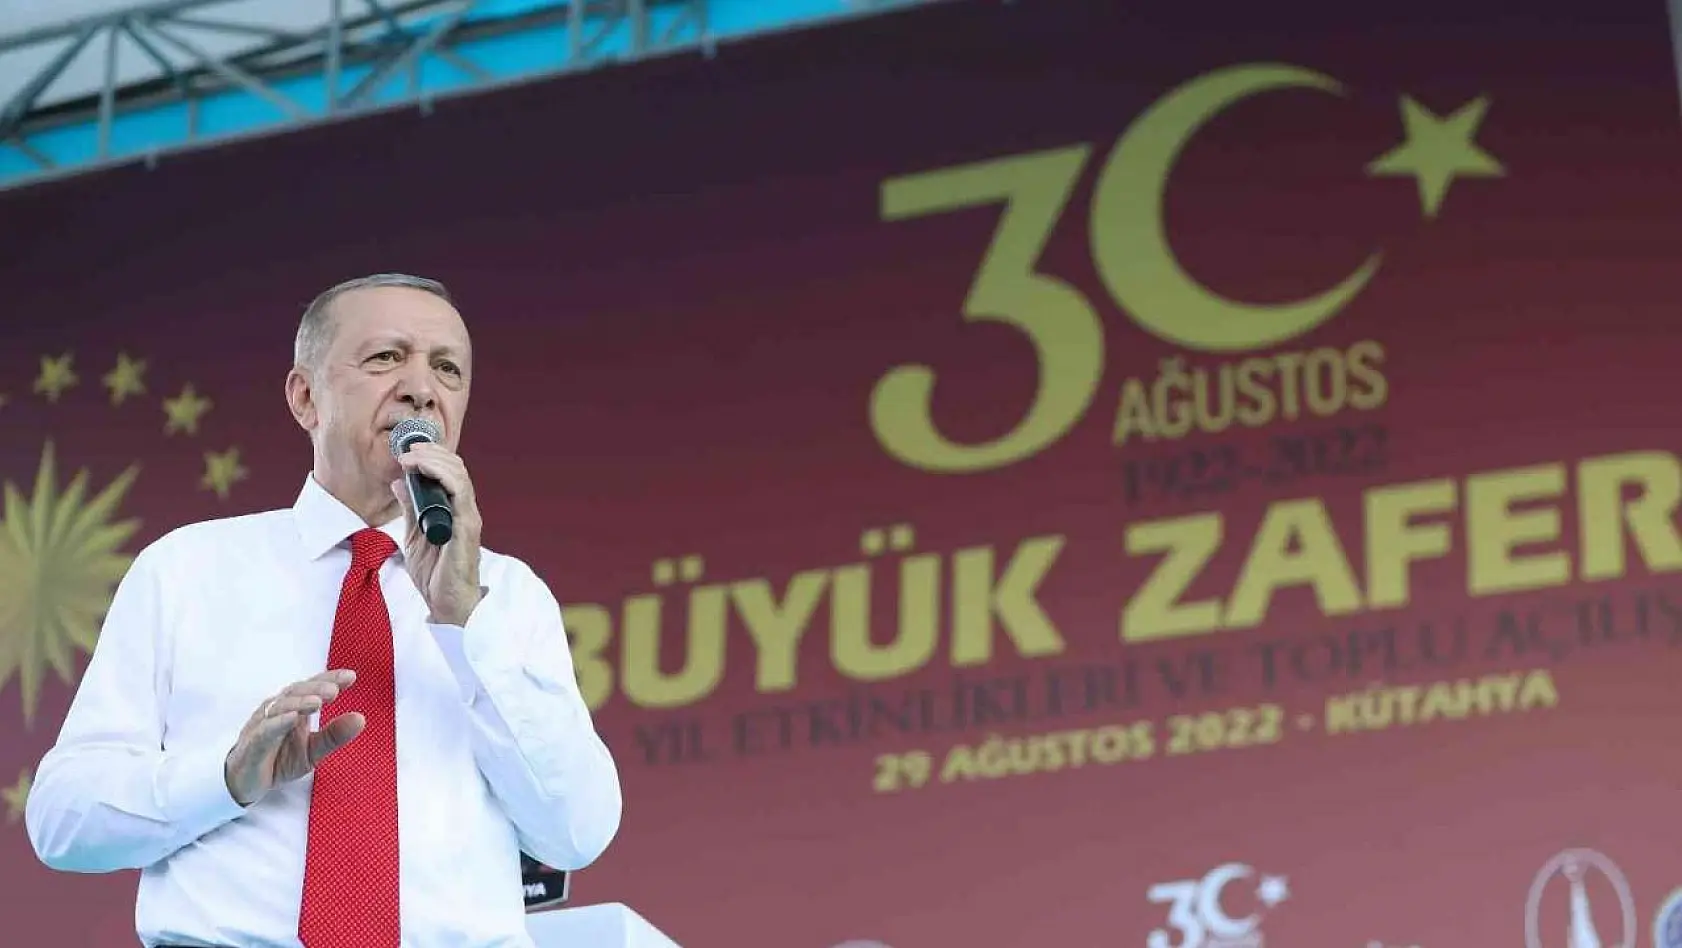 Erdoğan: 'Utanmadan sıkılmadan 'İşsizlik var' diyorlar, ne işsizliği ya'